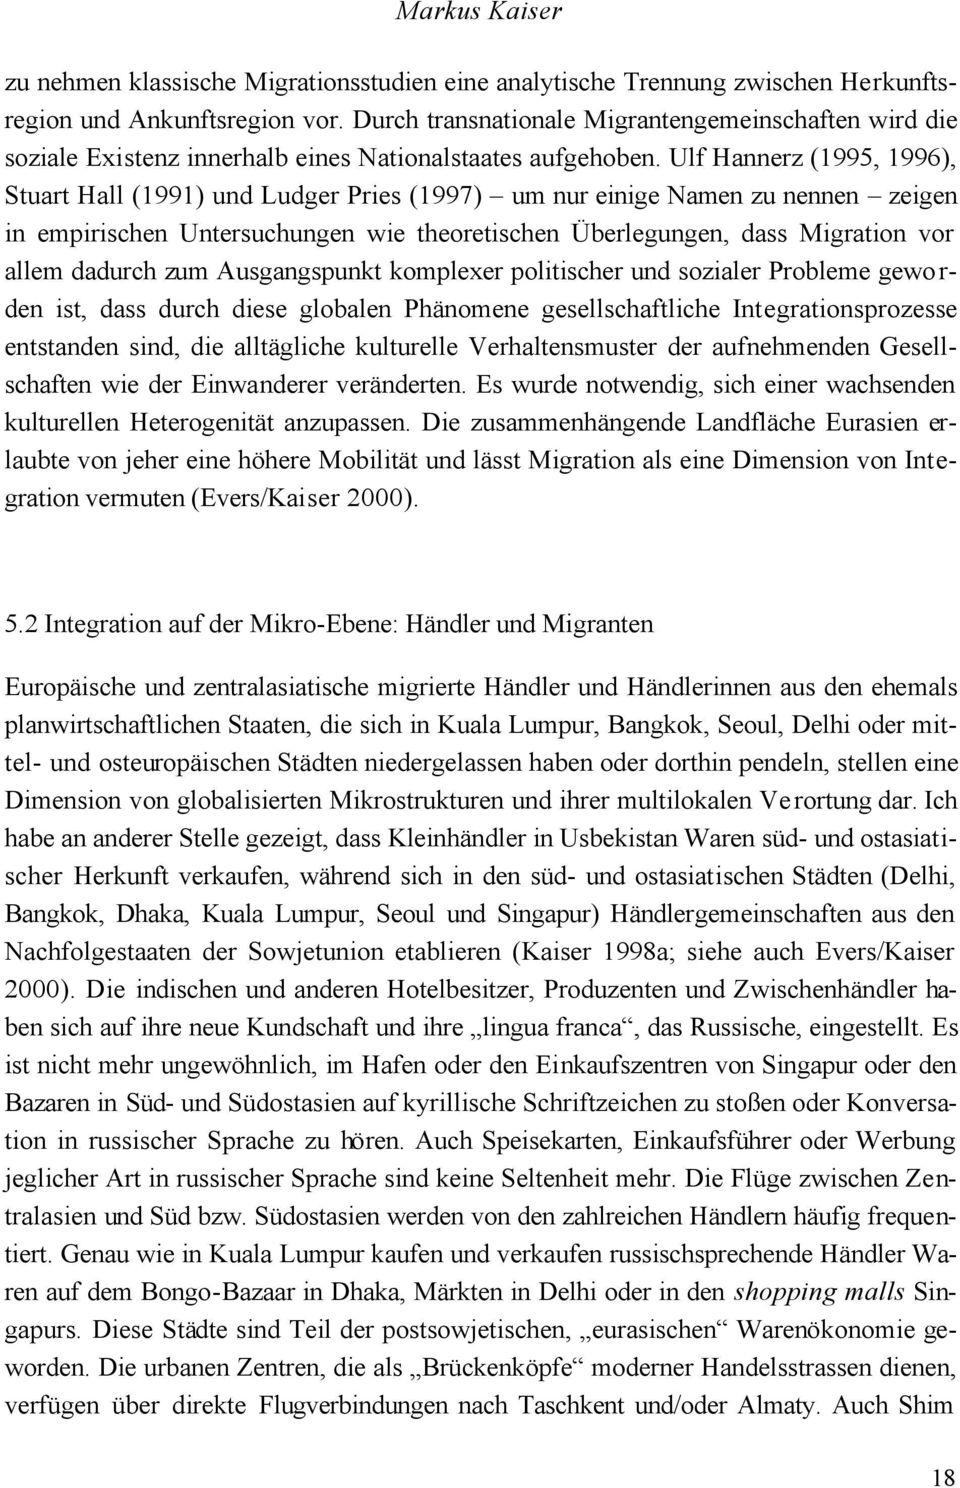 Ulf Hannerz (1995, 1996), Stuart Hall (1991) und Ludger Pries (1997) um nur einige Namen zu nennen zeigen in empirischen Untersuchungen wie theoretischen Überlegungen, dass Migration vor allem